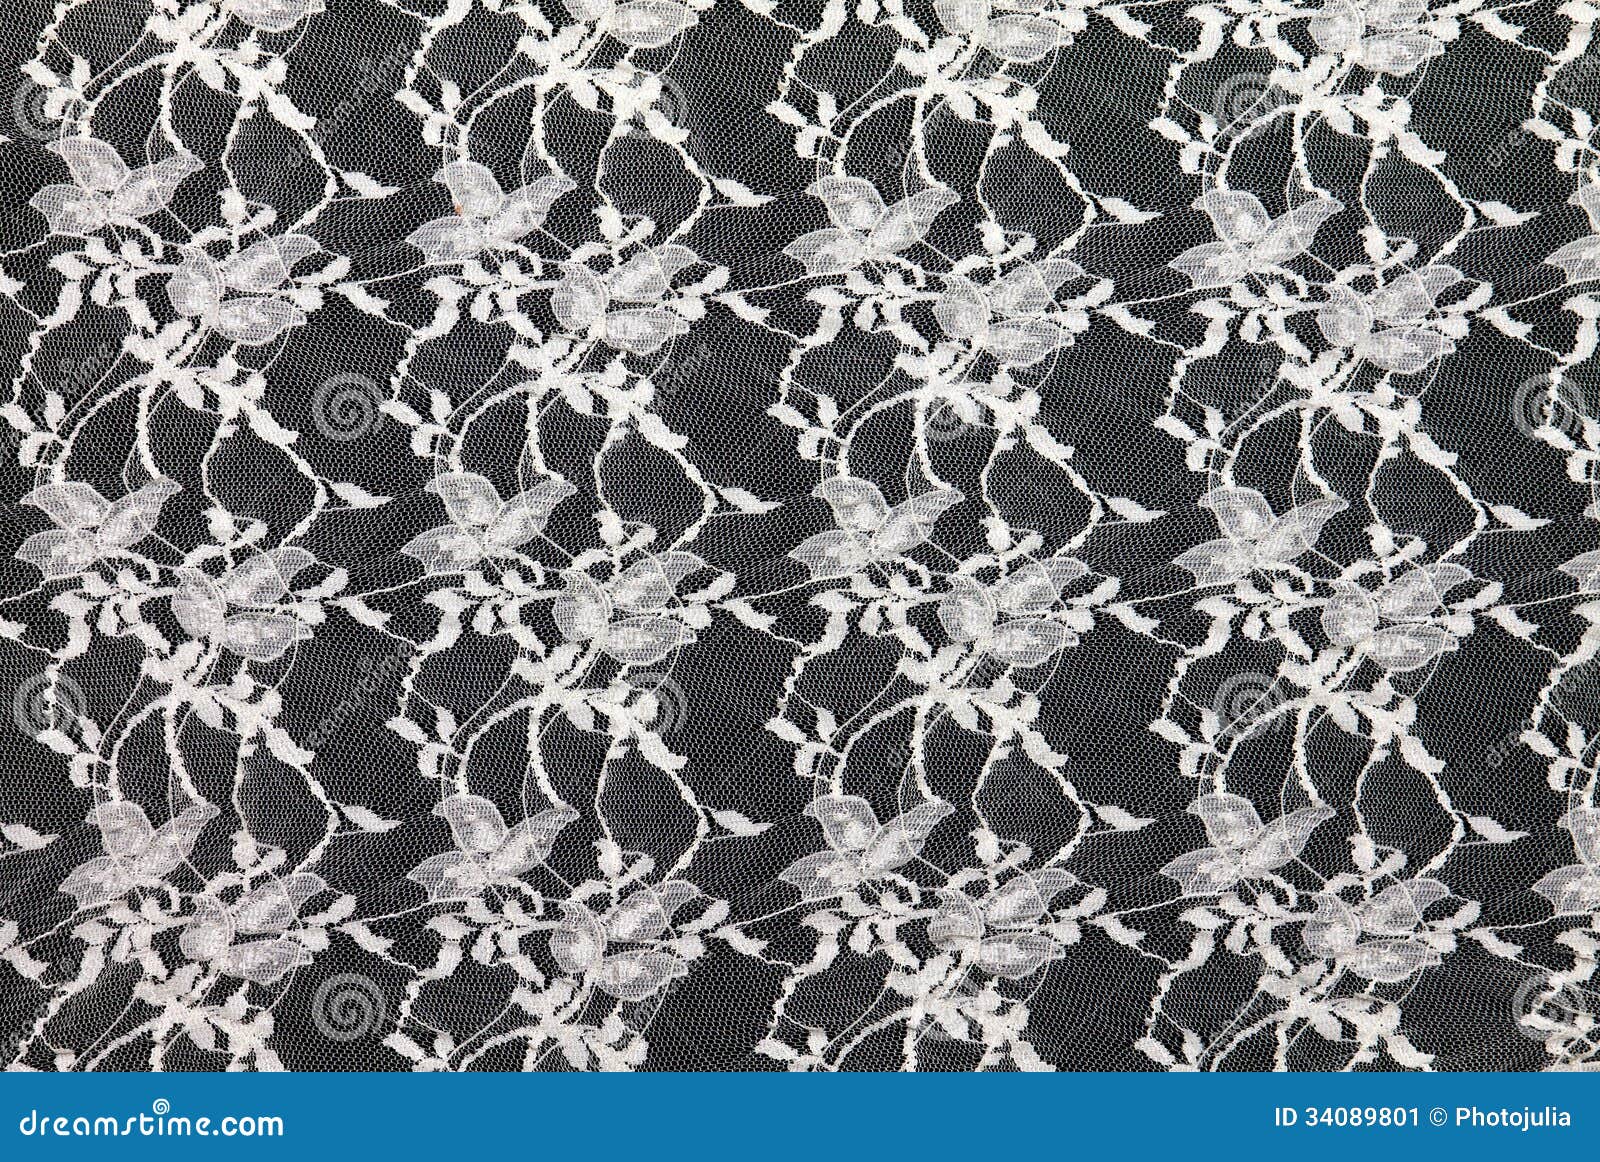 Black Lace On White Background Stock Photo 337308737